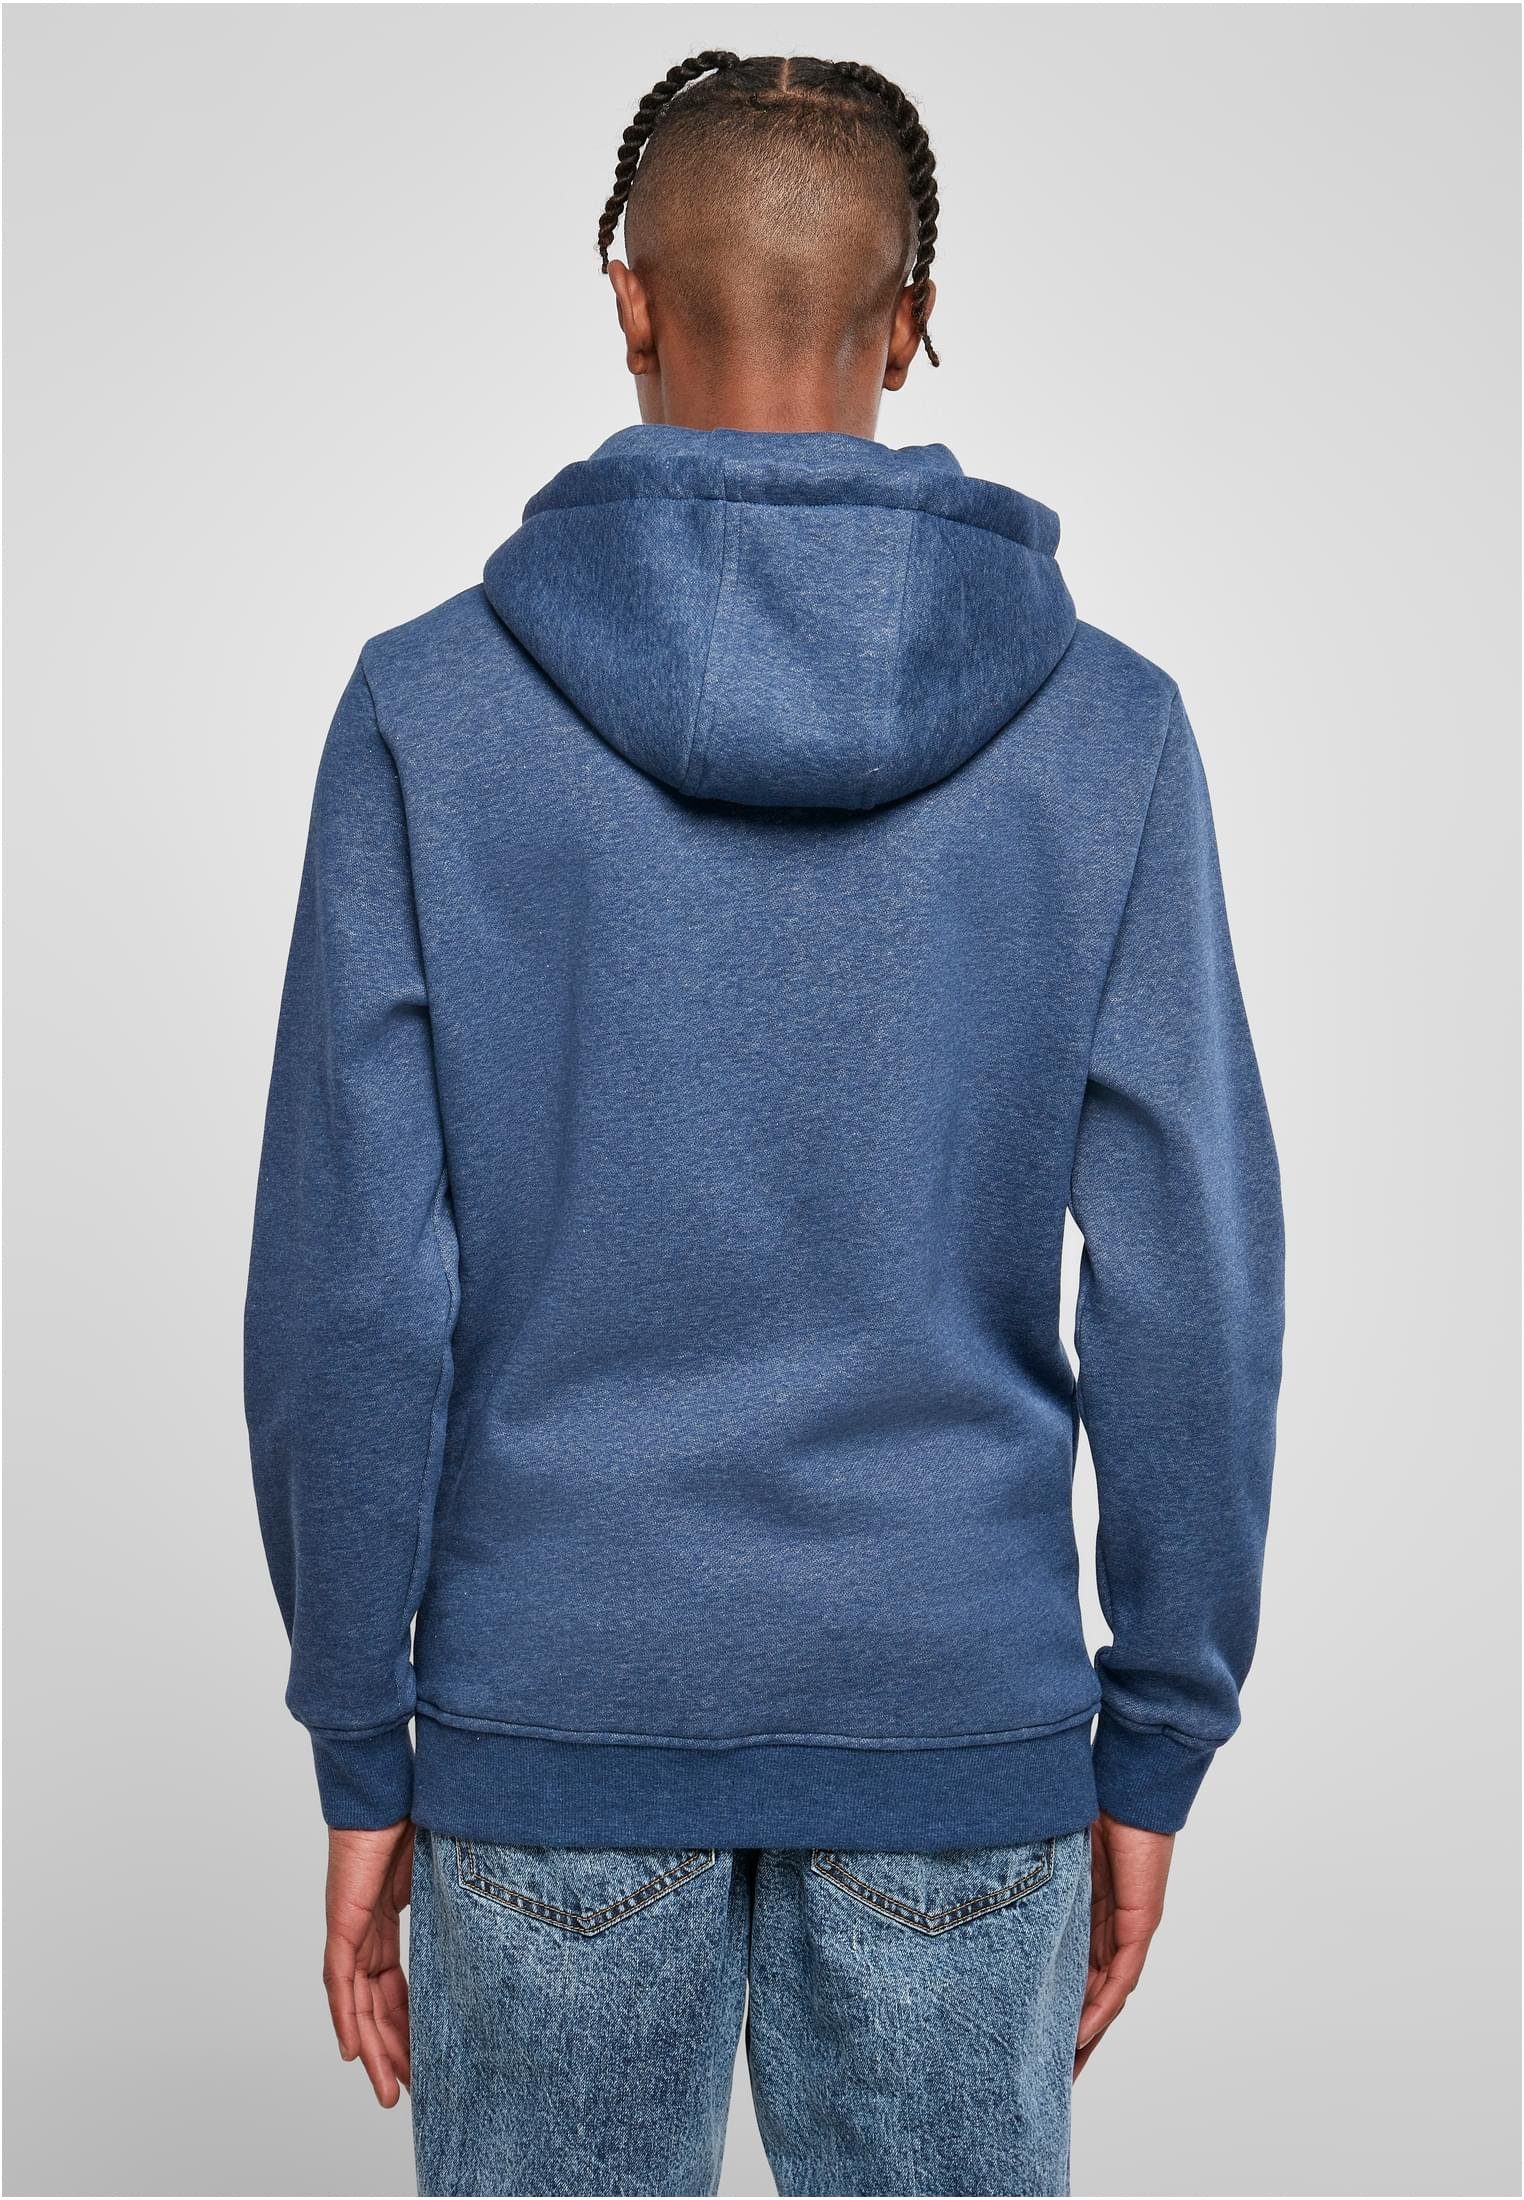 URBAN CLASSICS (1-tlg) Basic Hoody Herren bluelightmelange Melange Sweater